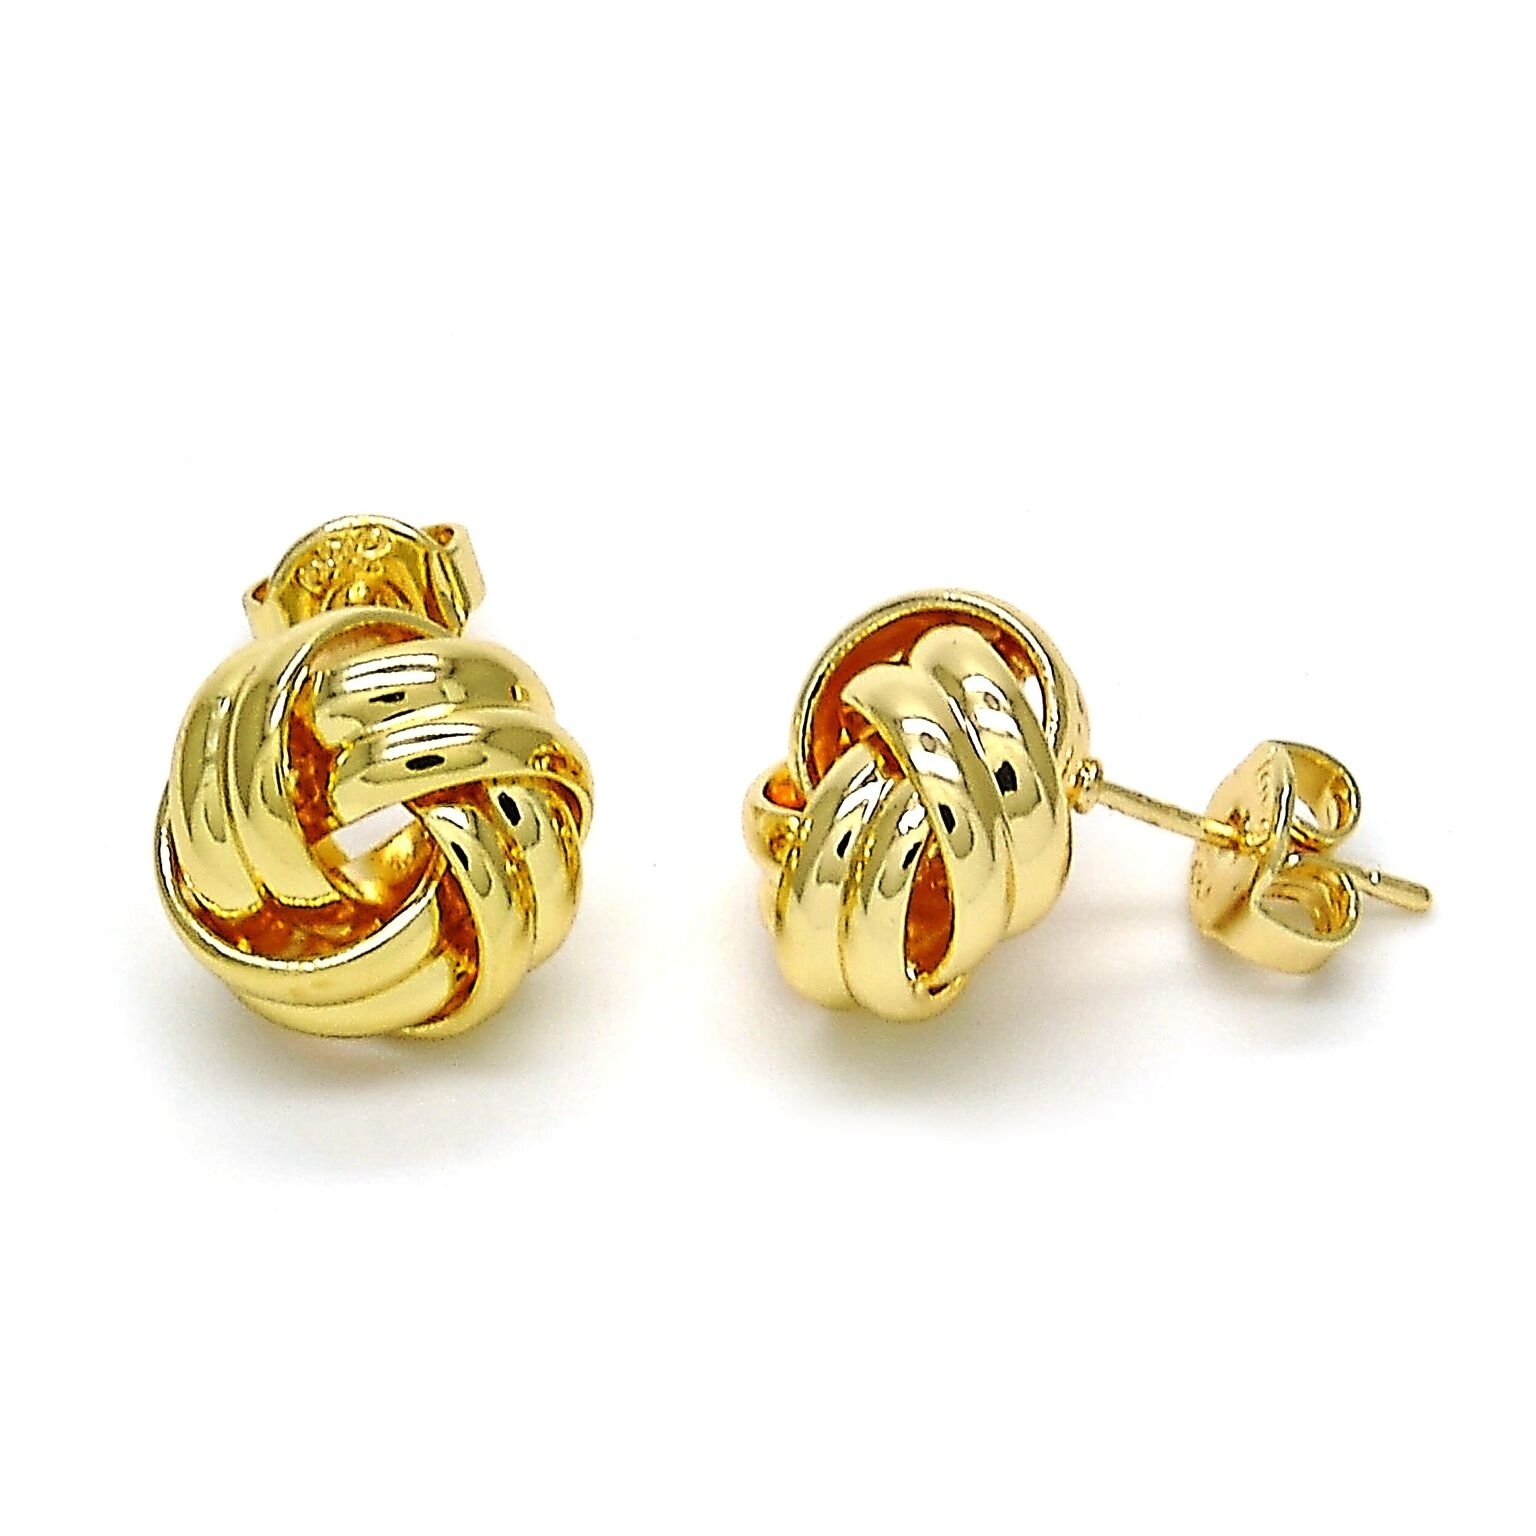 14K Gold Filled High Polish Finsh Stud Earring, Love Knot Design, Polished Finish, Golden Tone